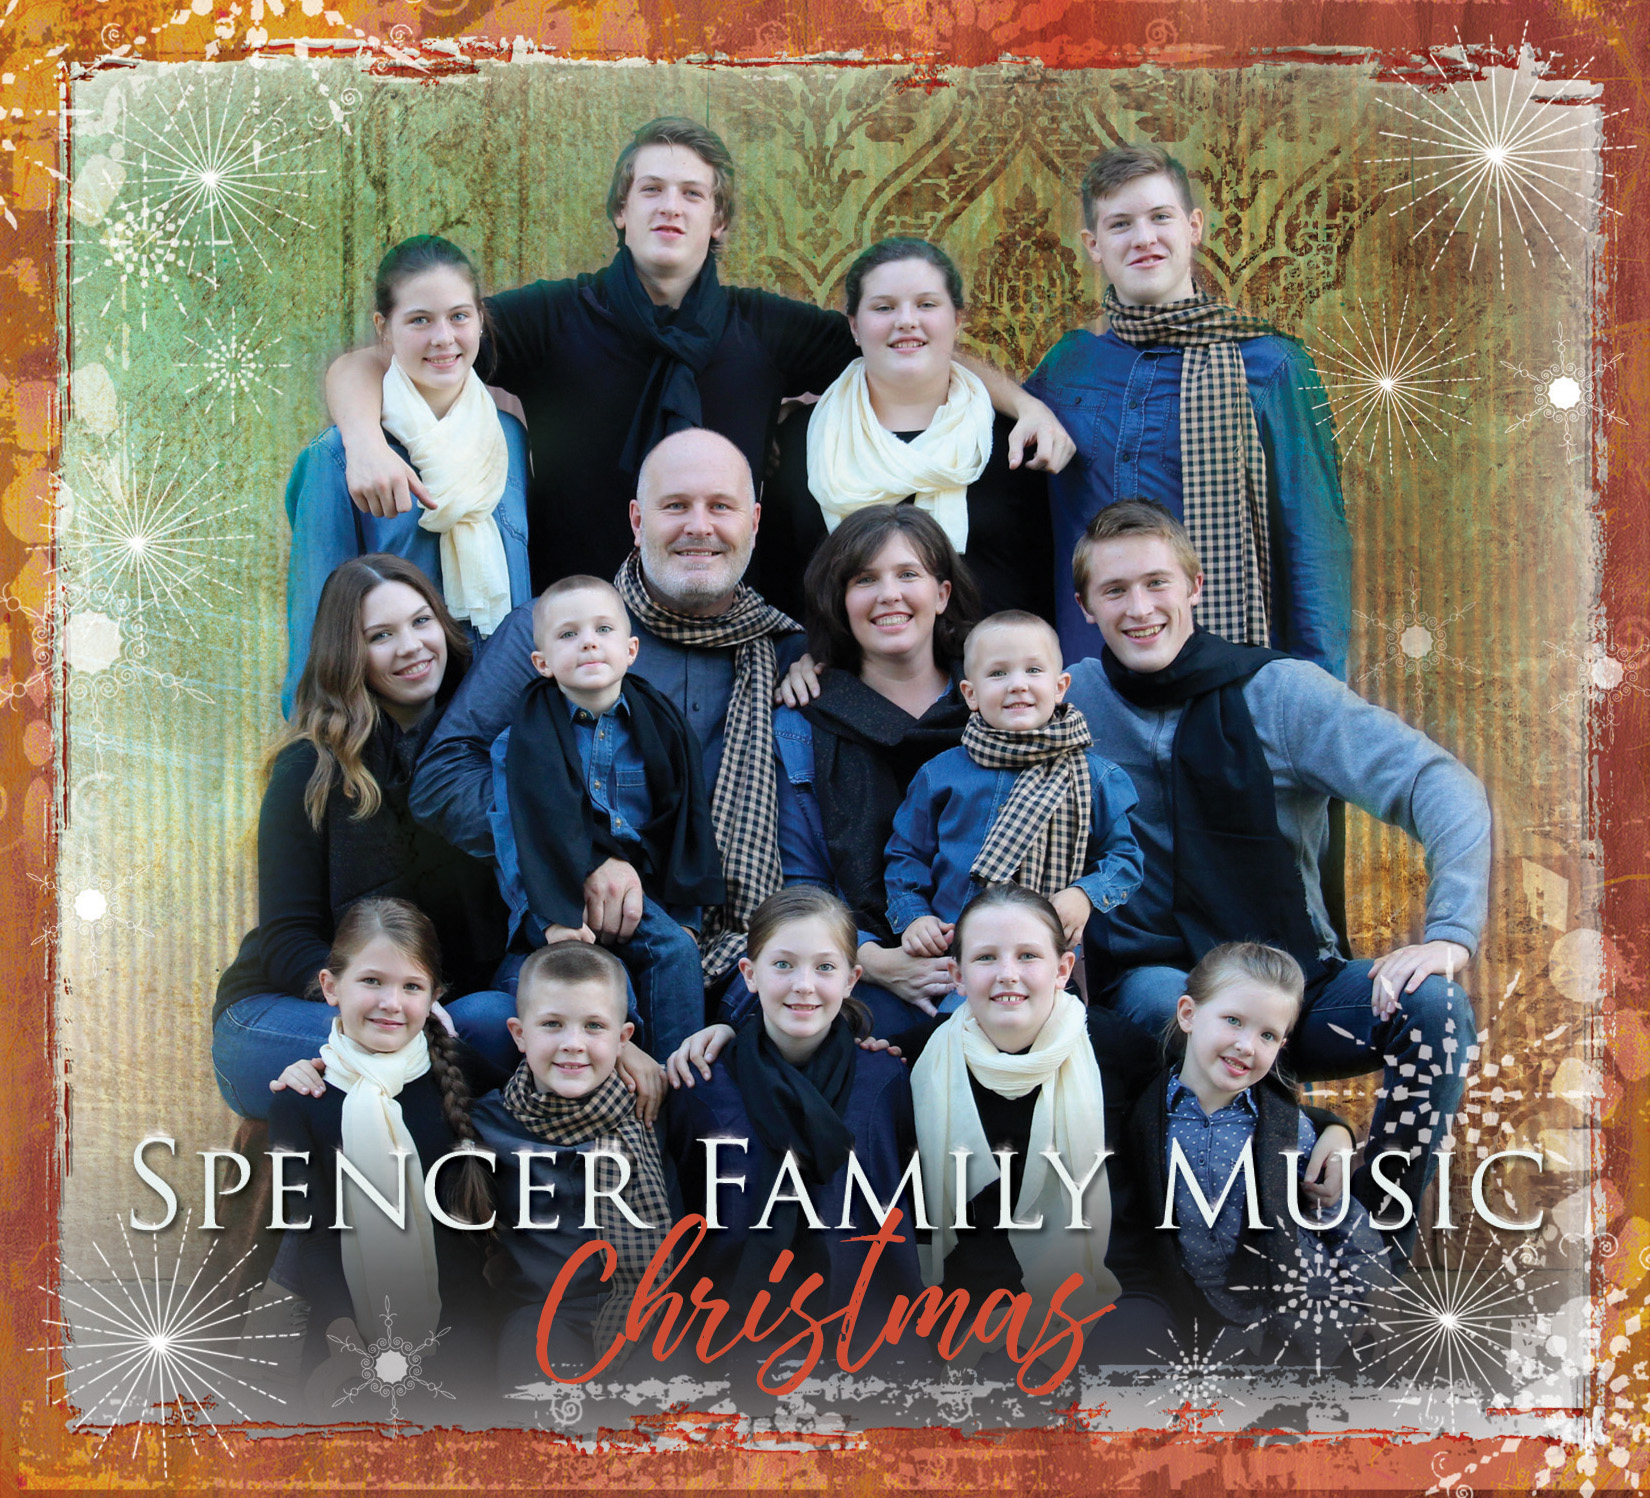 Spencer-Family-Christmas-album-pic.jpg